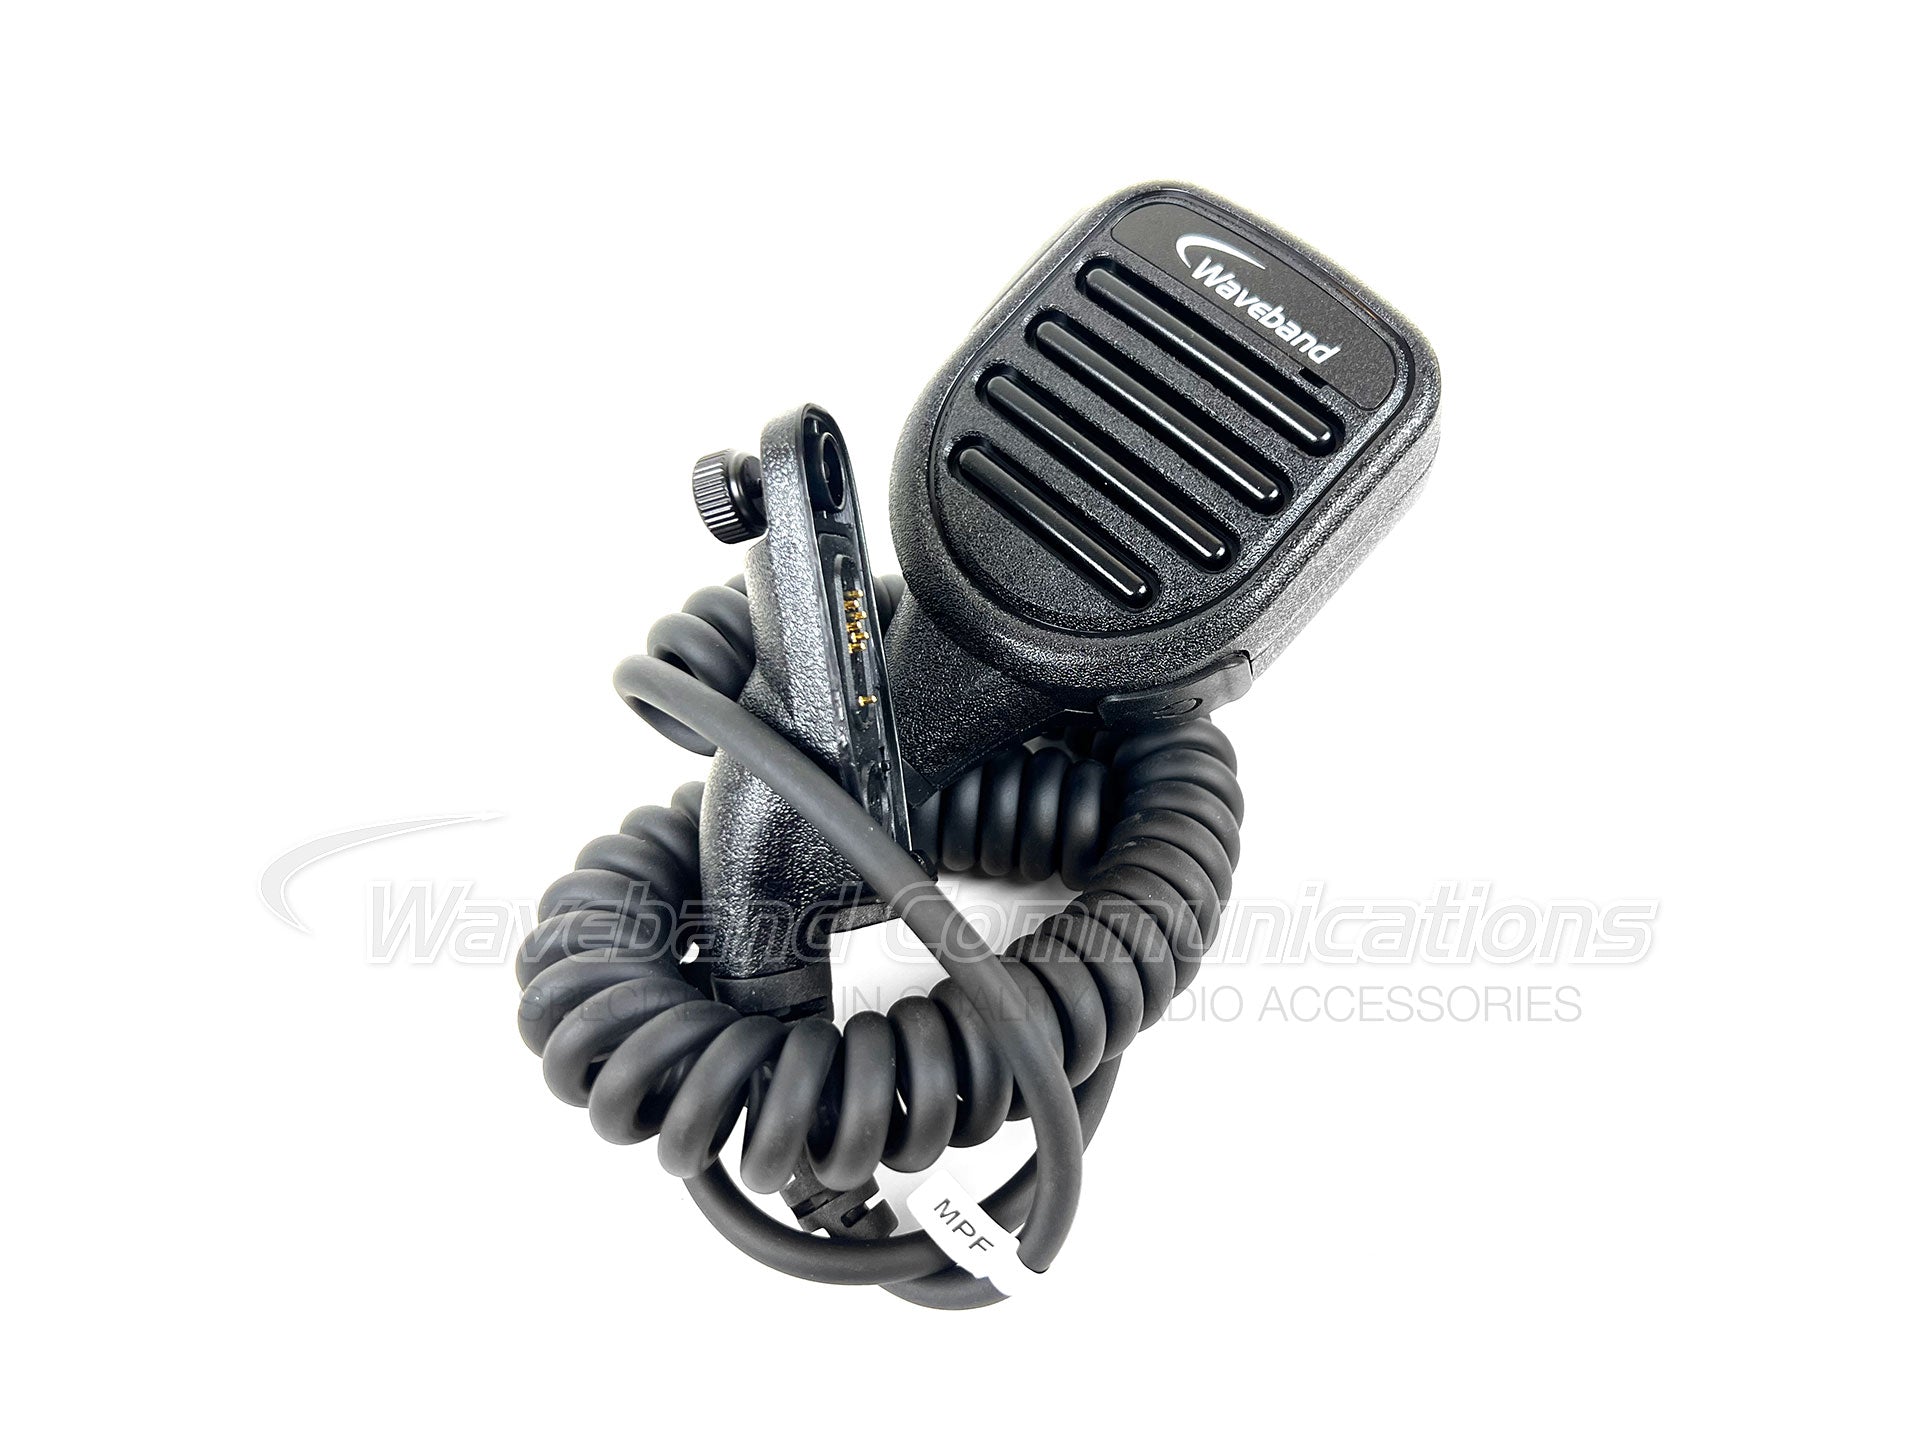 PMMN4025 Microfone com alto-falante remoto para rádios Motorola XPR TRBO. WB # WX-8010-M-P08